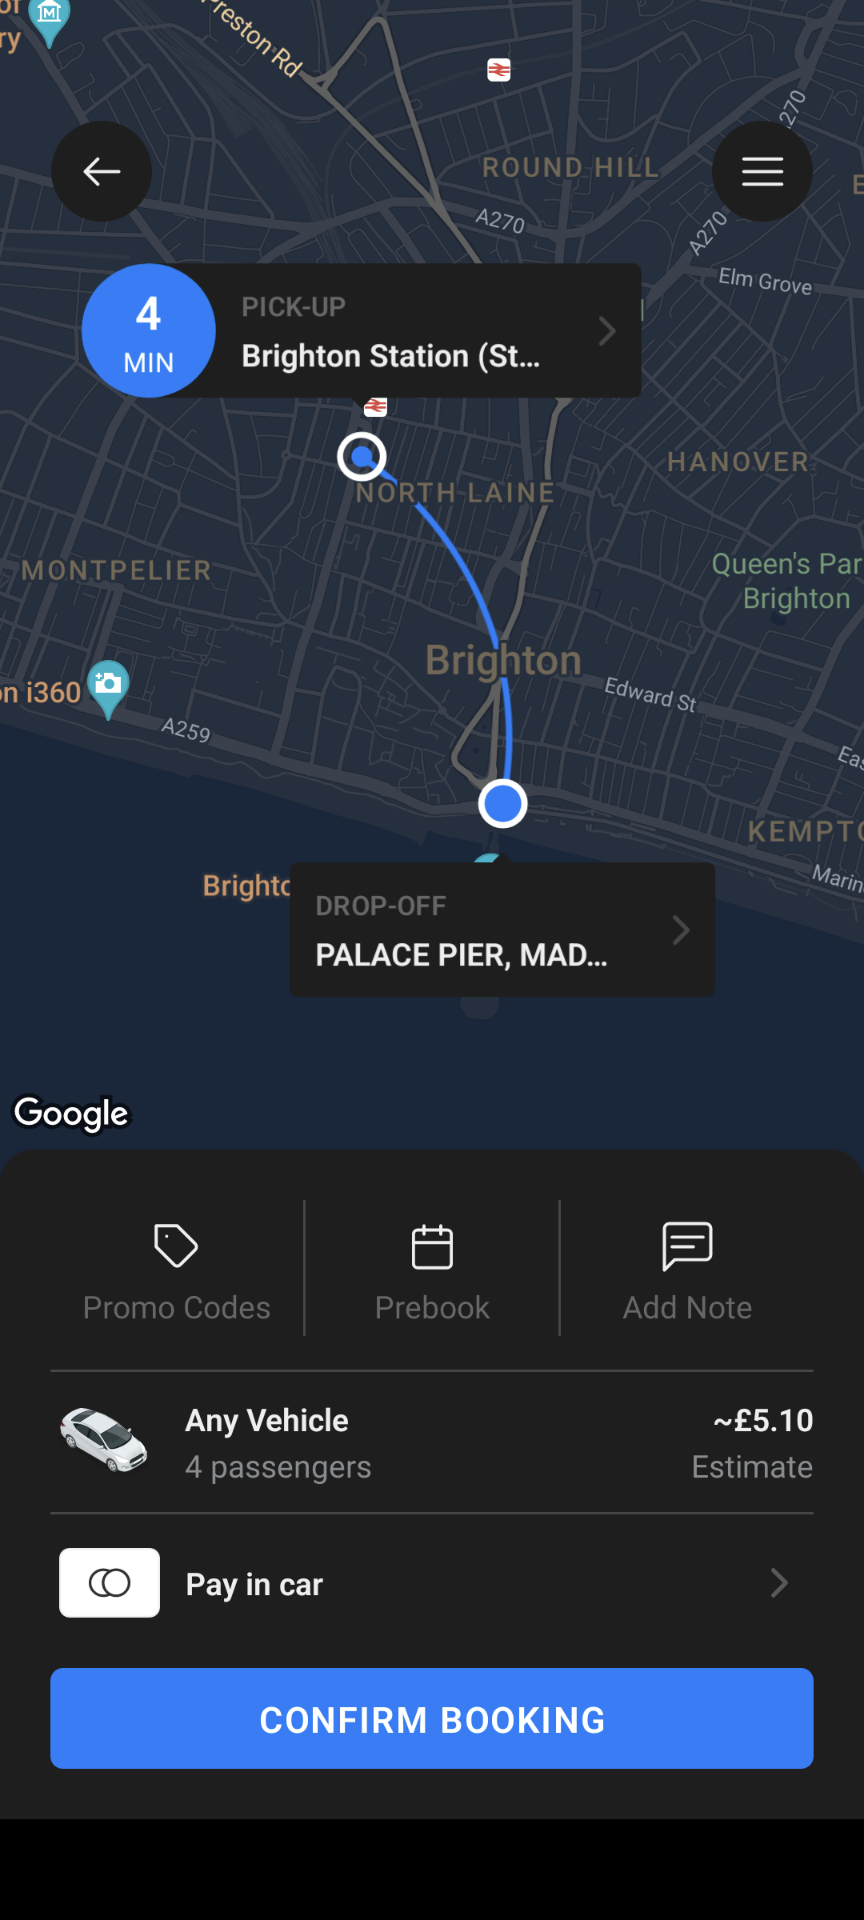 Brighton Taxi App